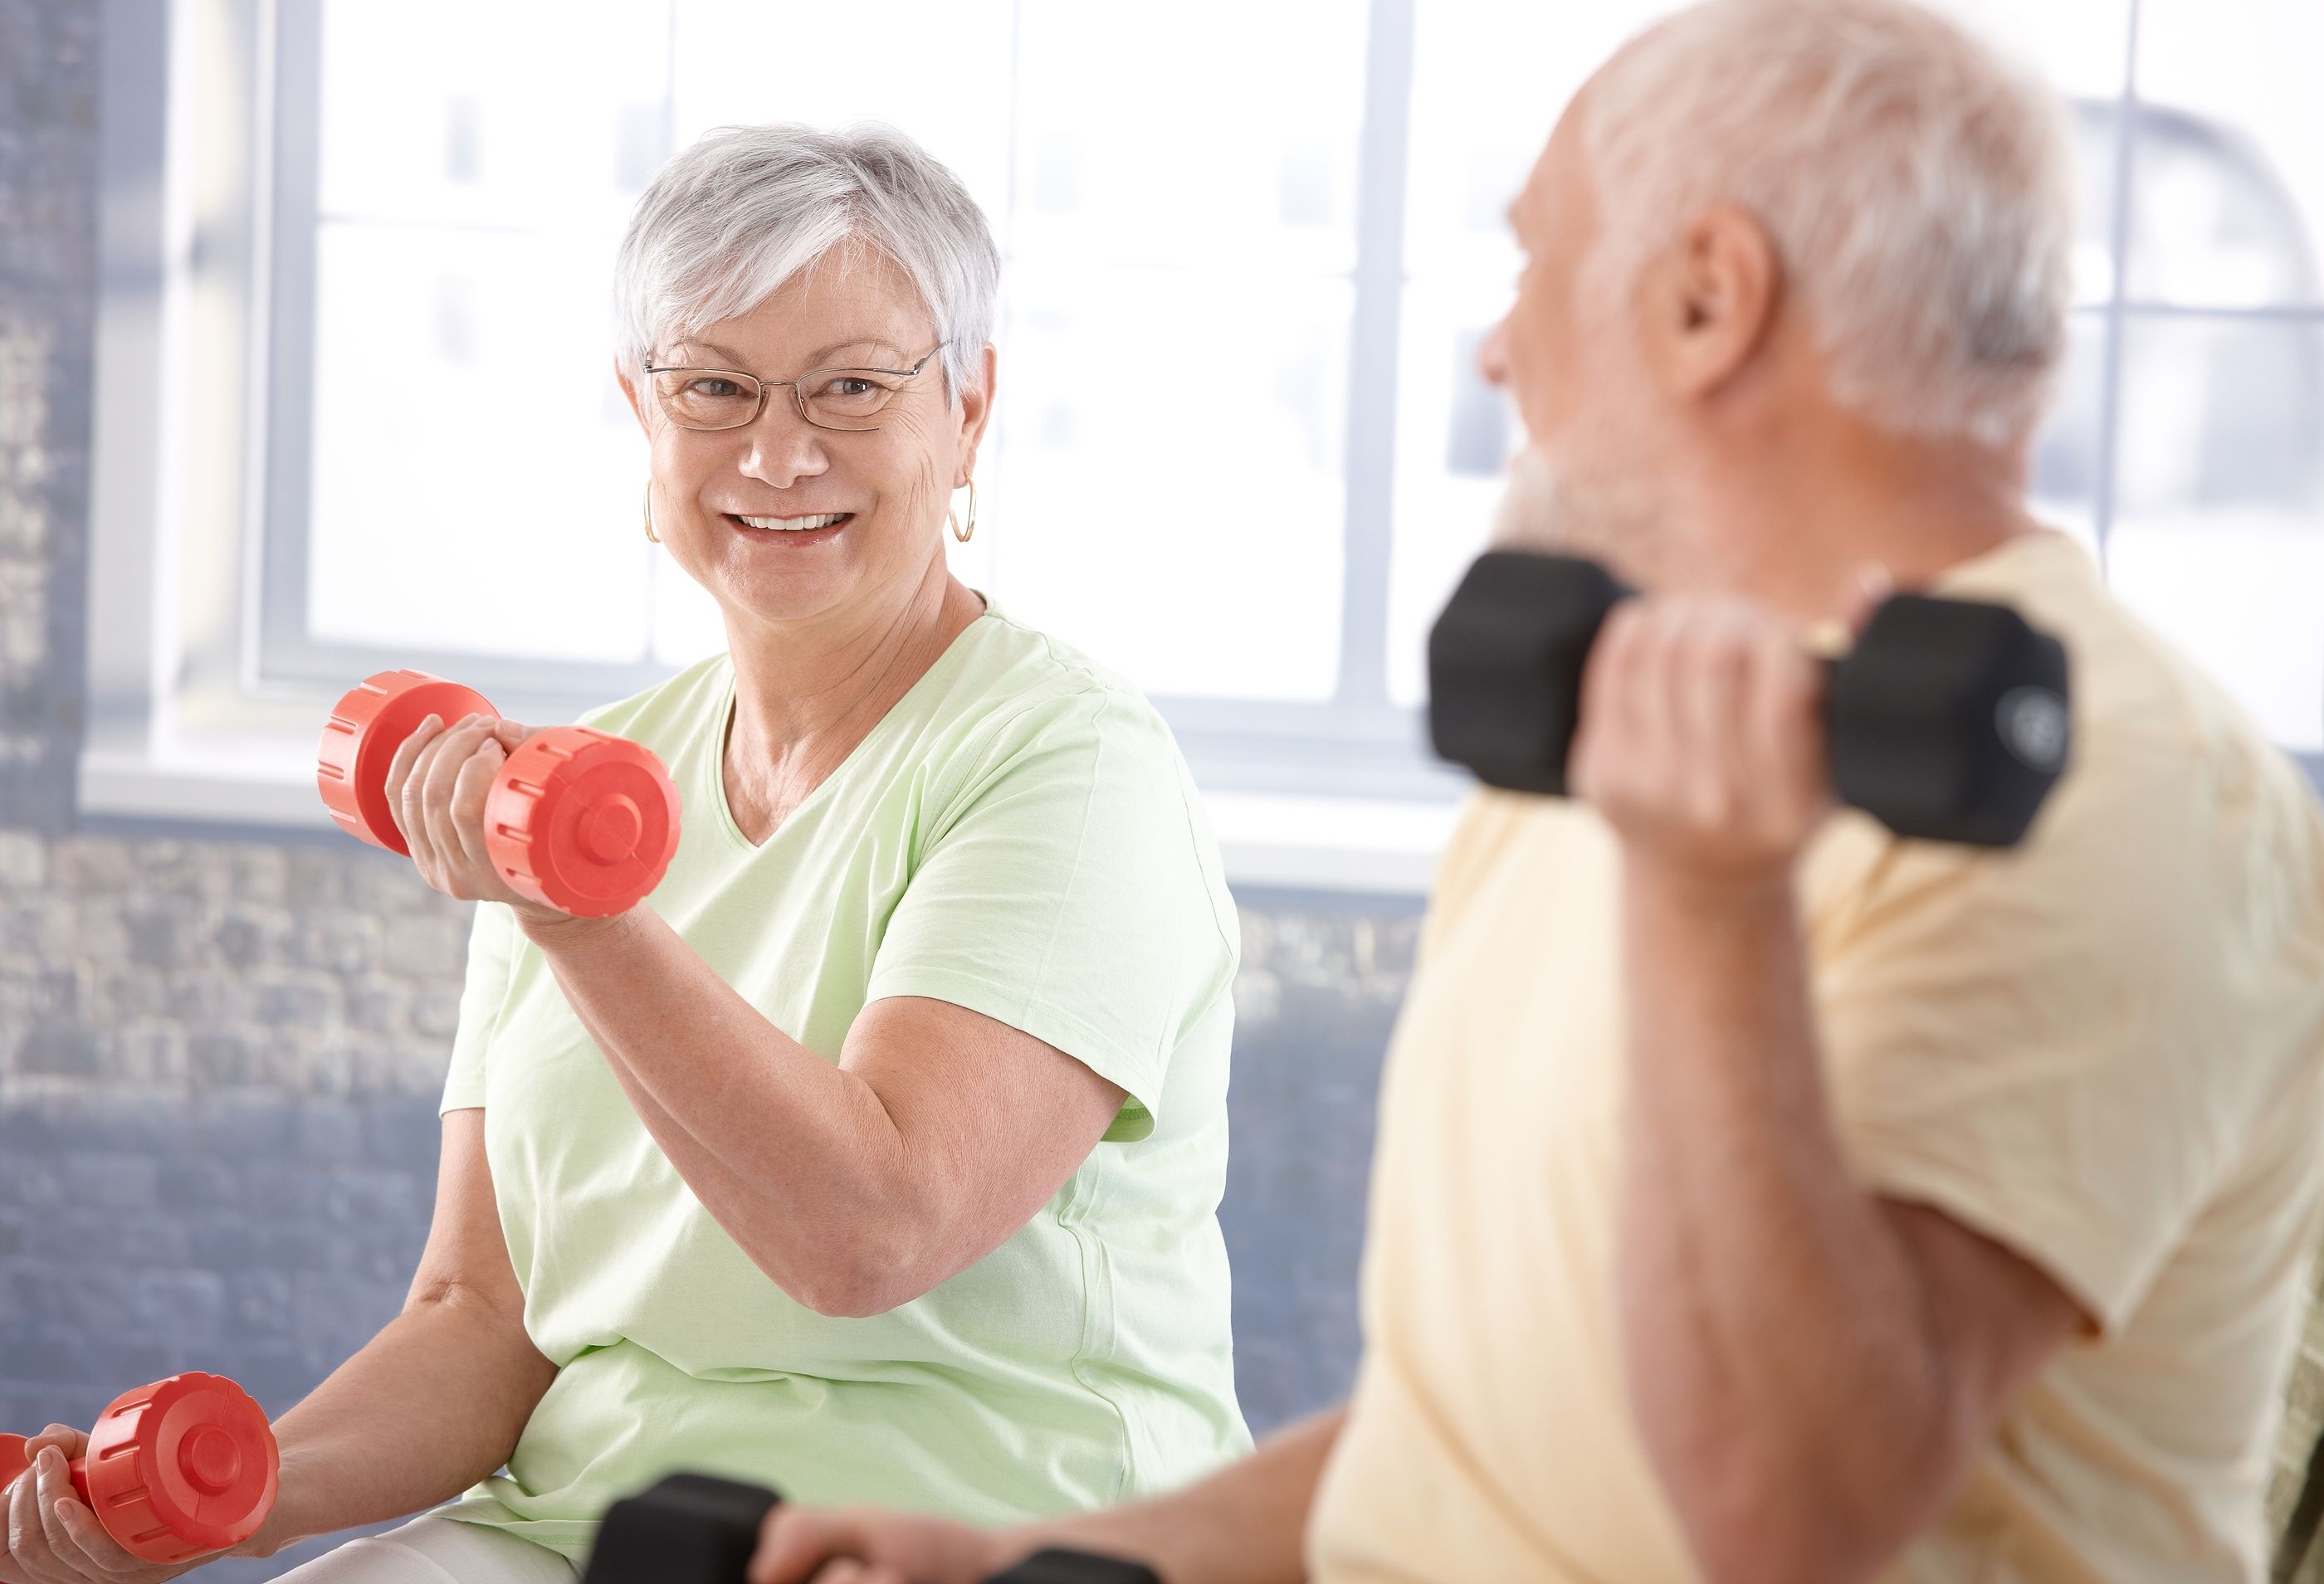 Lanzan una guía para ayudar a las personas mayores a mantenerse en forma. Foto: Bigstock